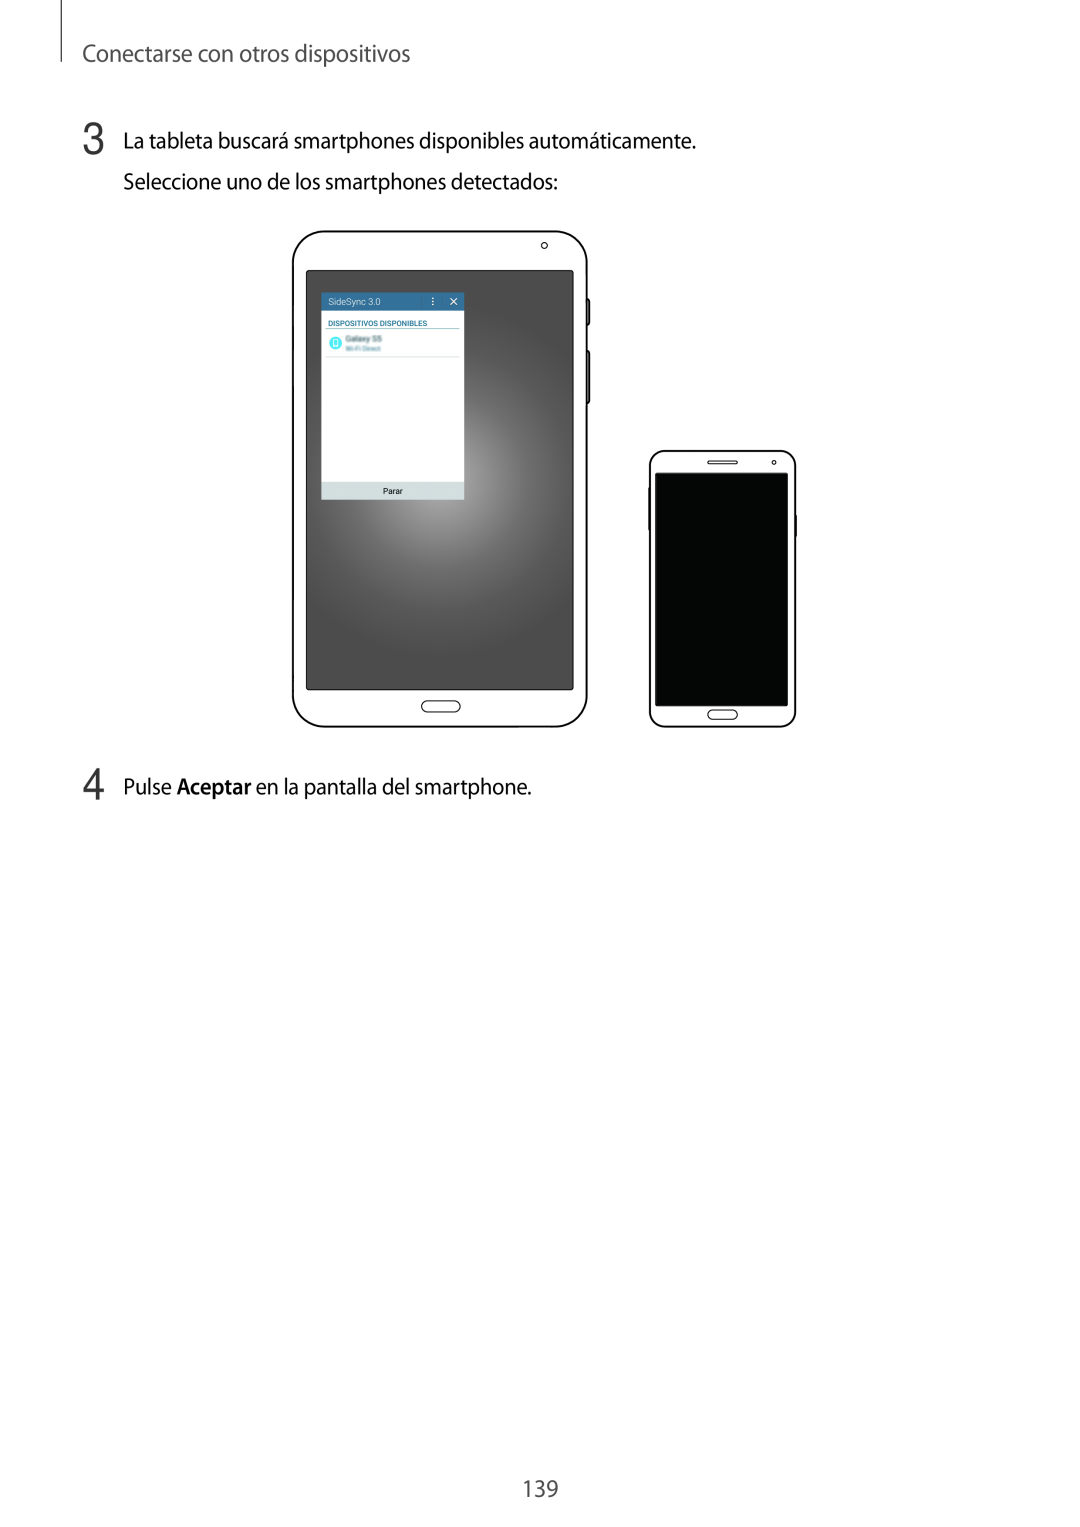 Samsung SM-T700NTSATPH, SM-T700NZWAXEO manual Conectarse con otros dispositivos, Pulse Aceptar en la pantalla del smartphone 